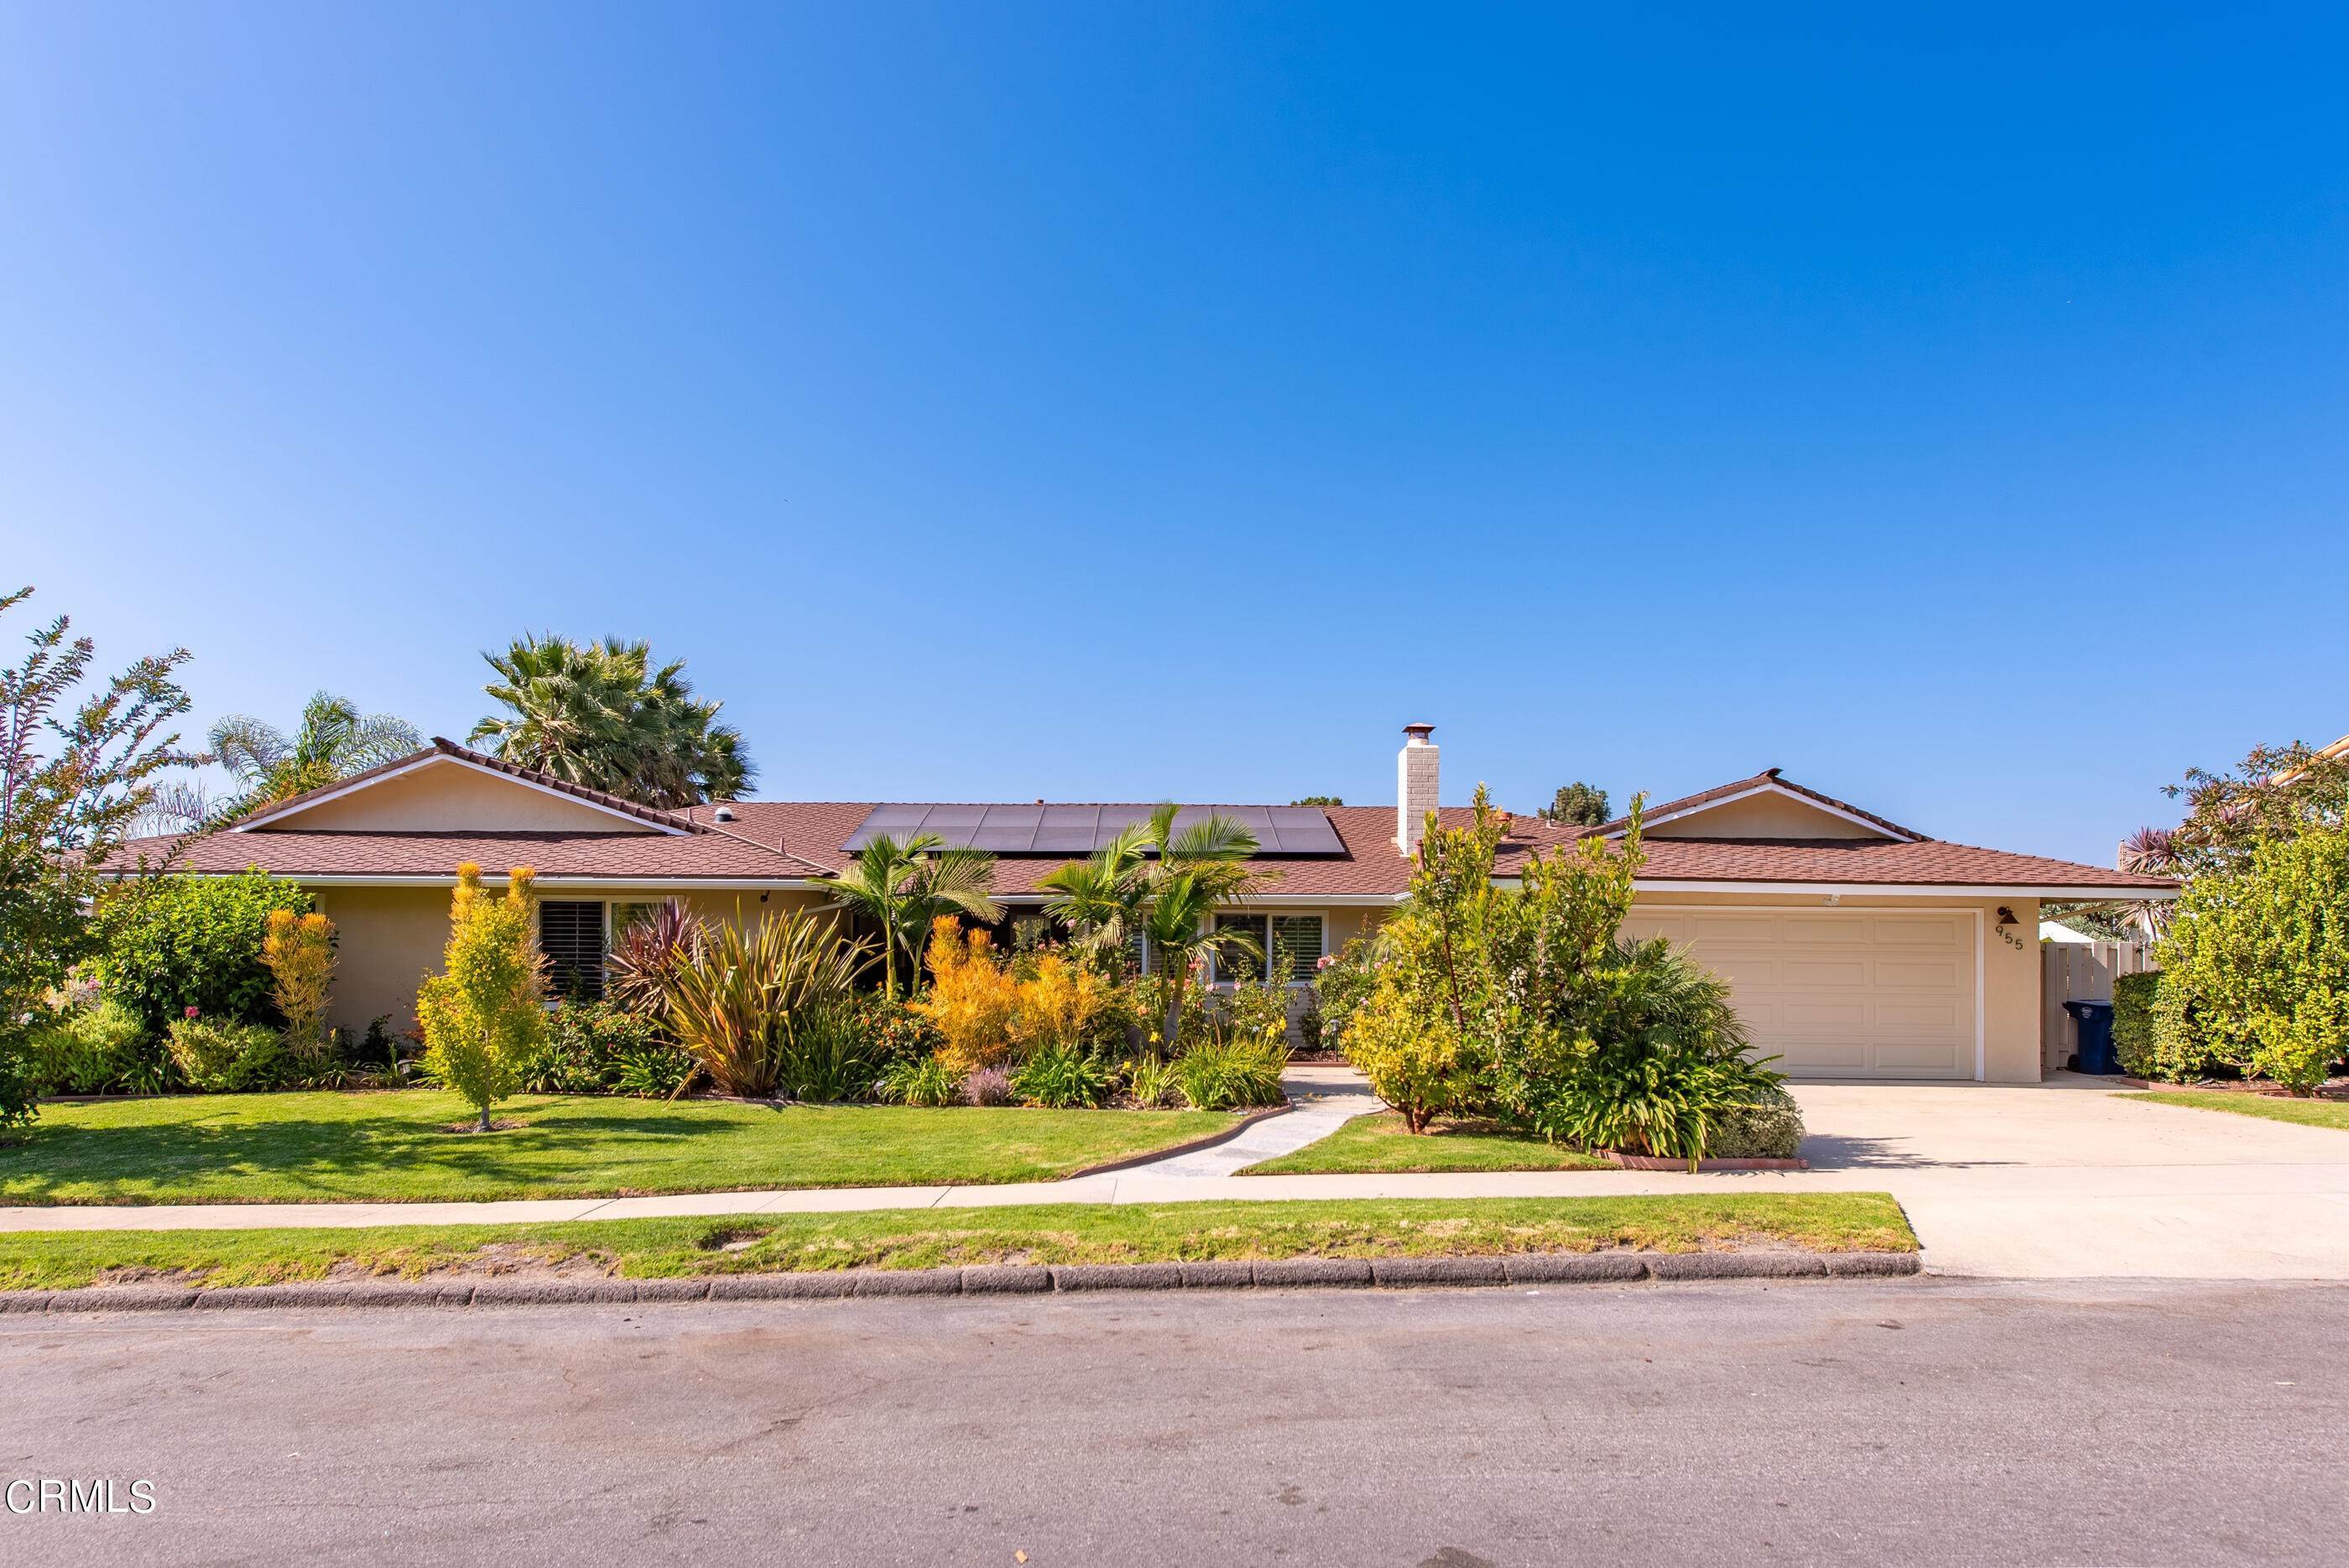 15. Single Family Homes for Sale at 953-955 Trueno Avenue Camarillo, California 93010 United States